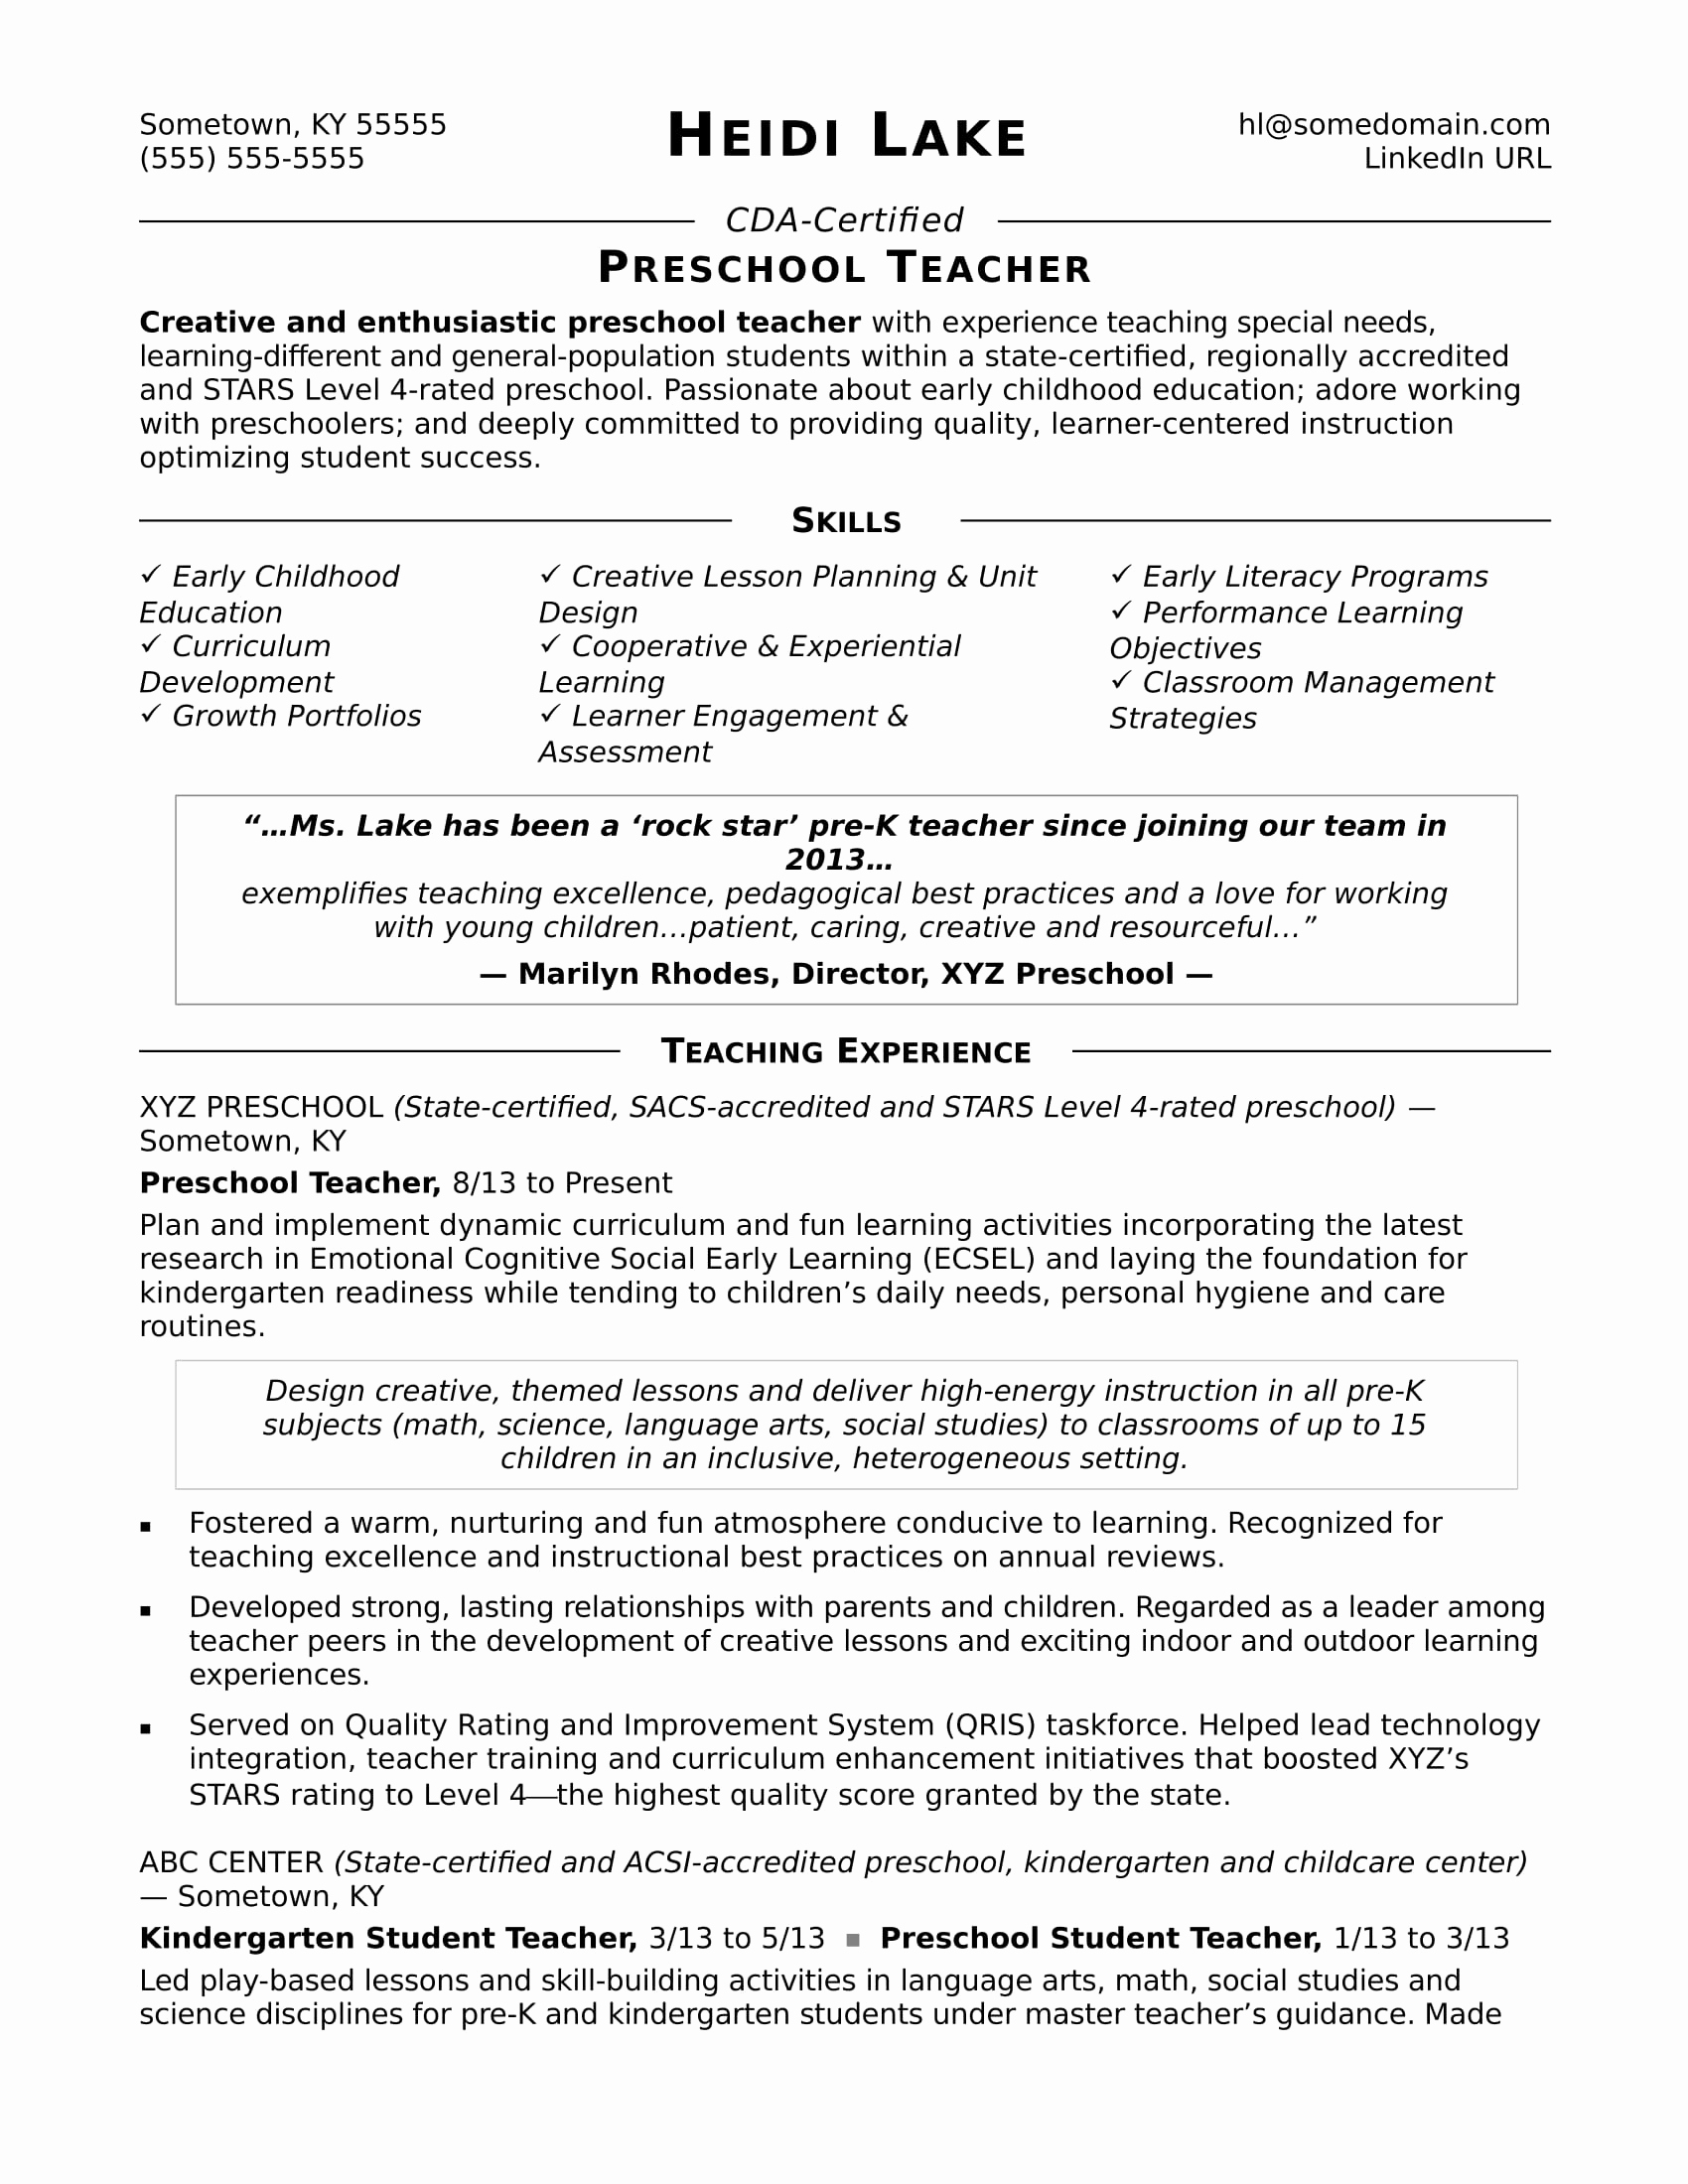 Resume Template for Teaching Luxury Preschool Teacher Resume Sample